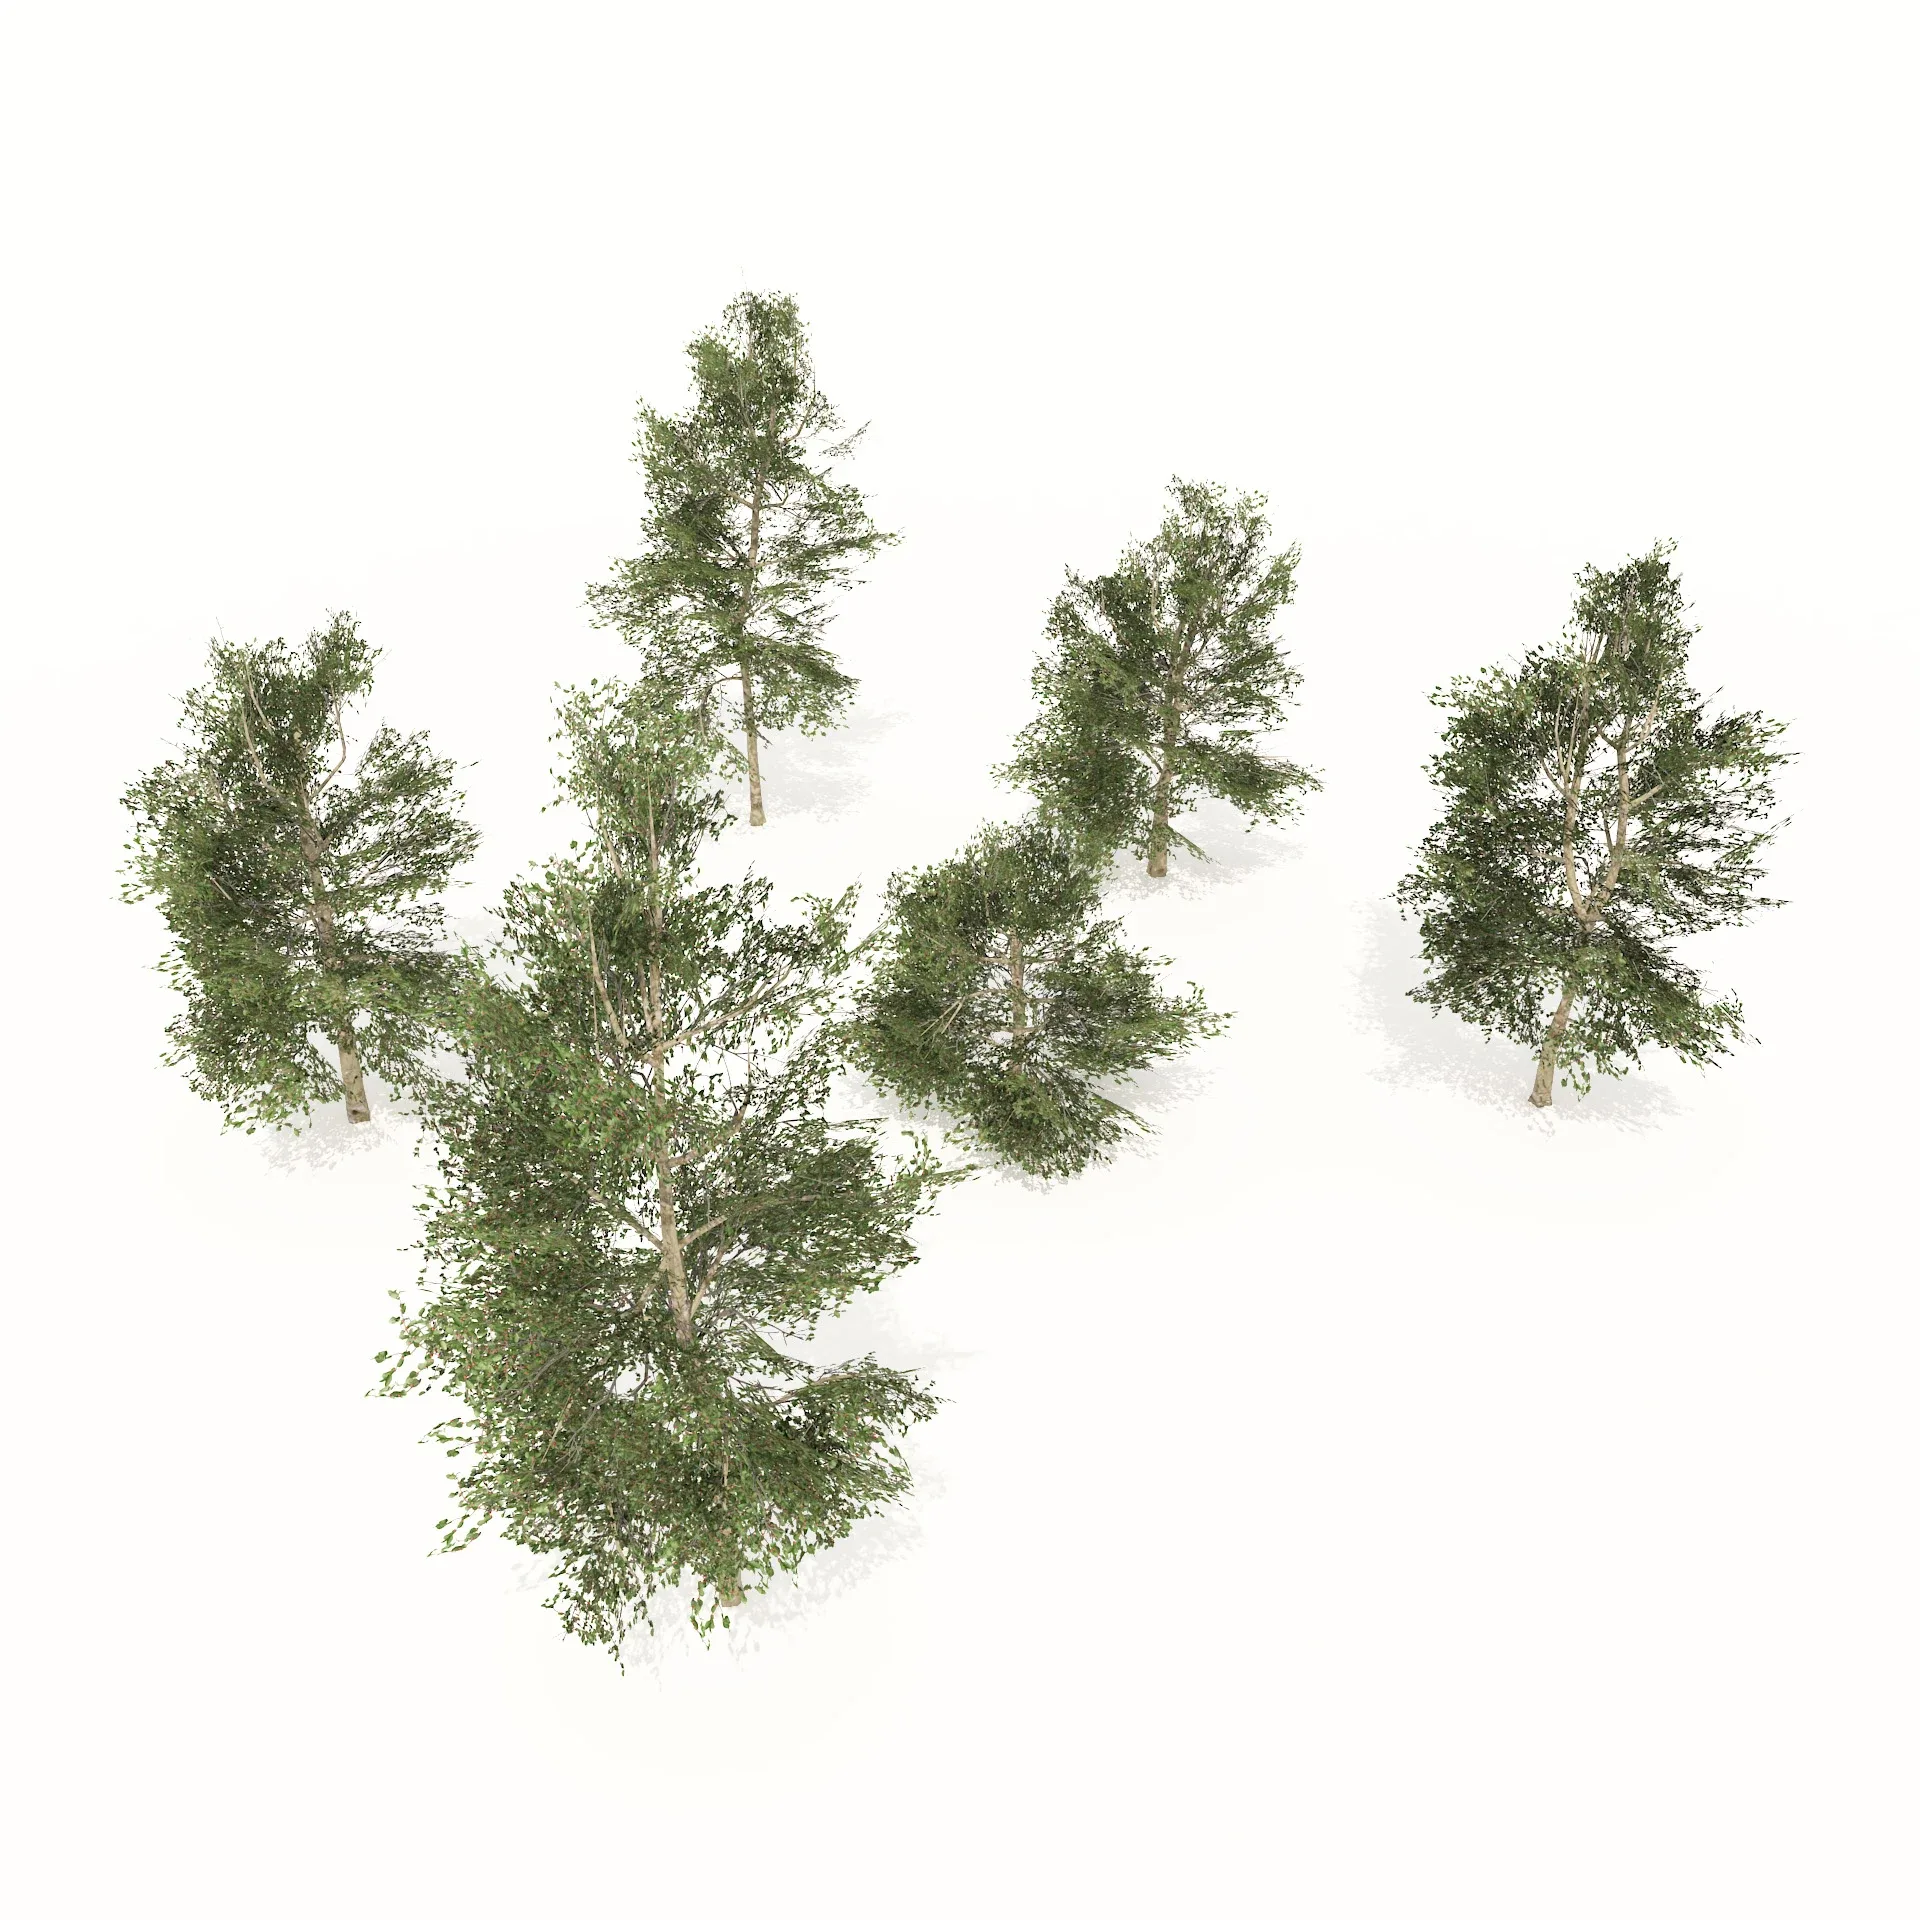 Common Buckthorn trees 3D model